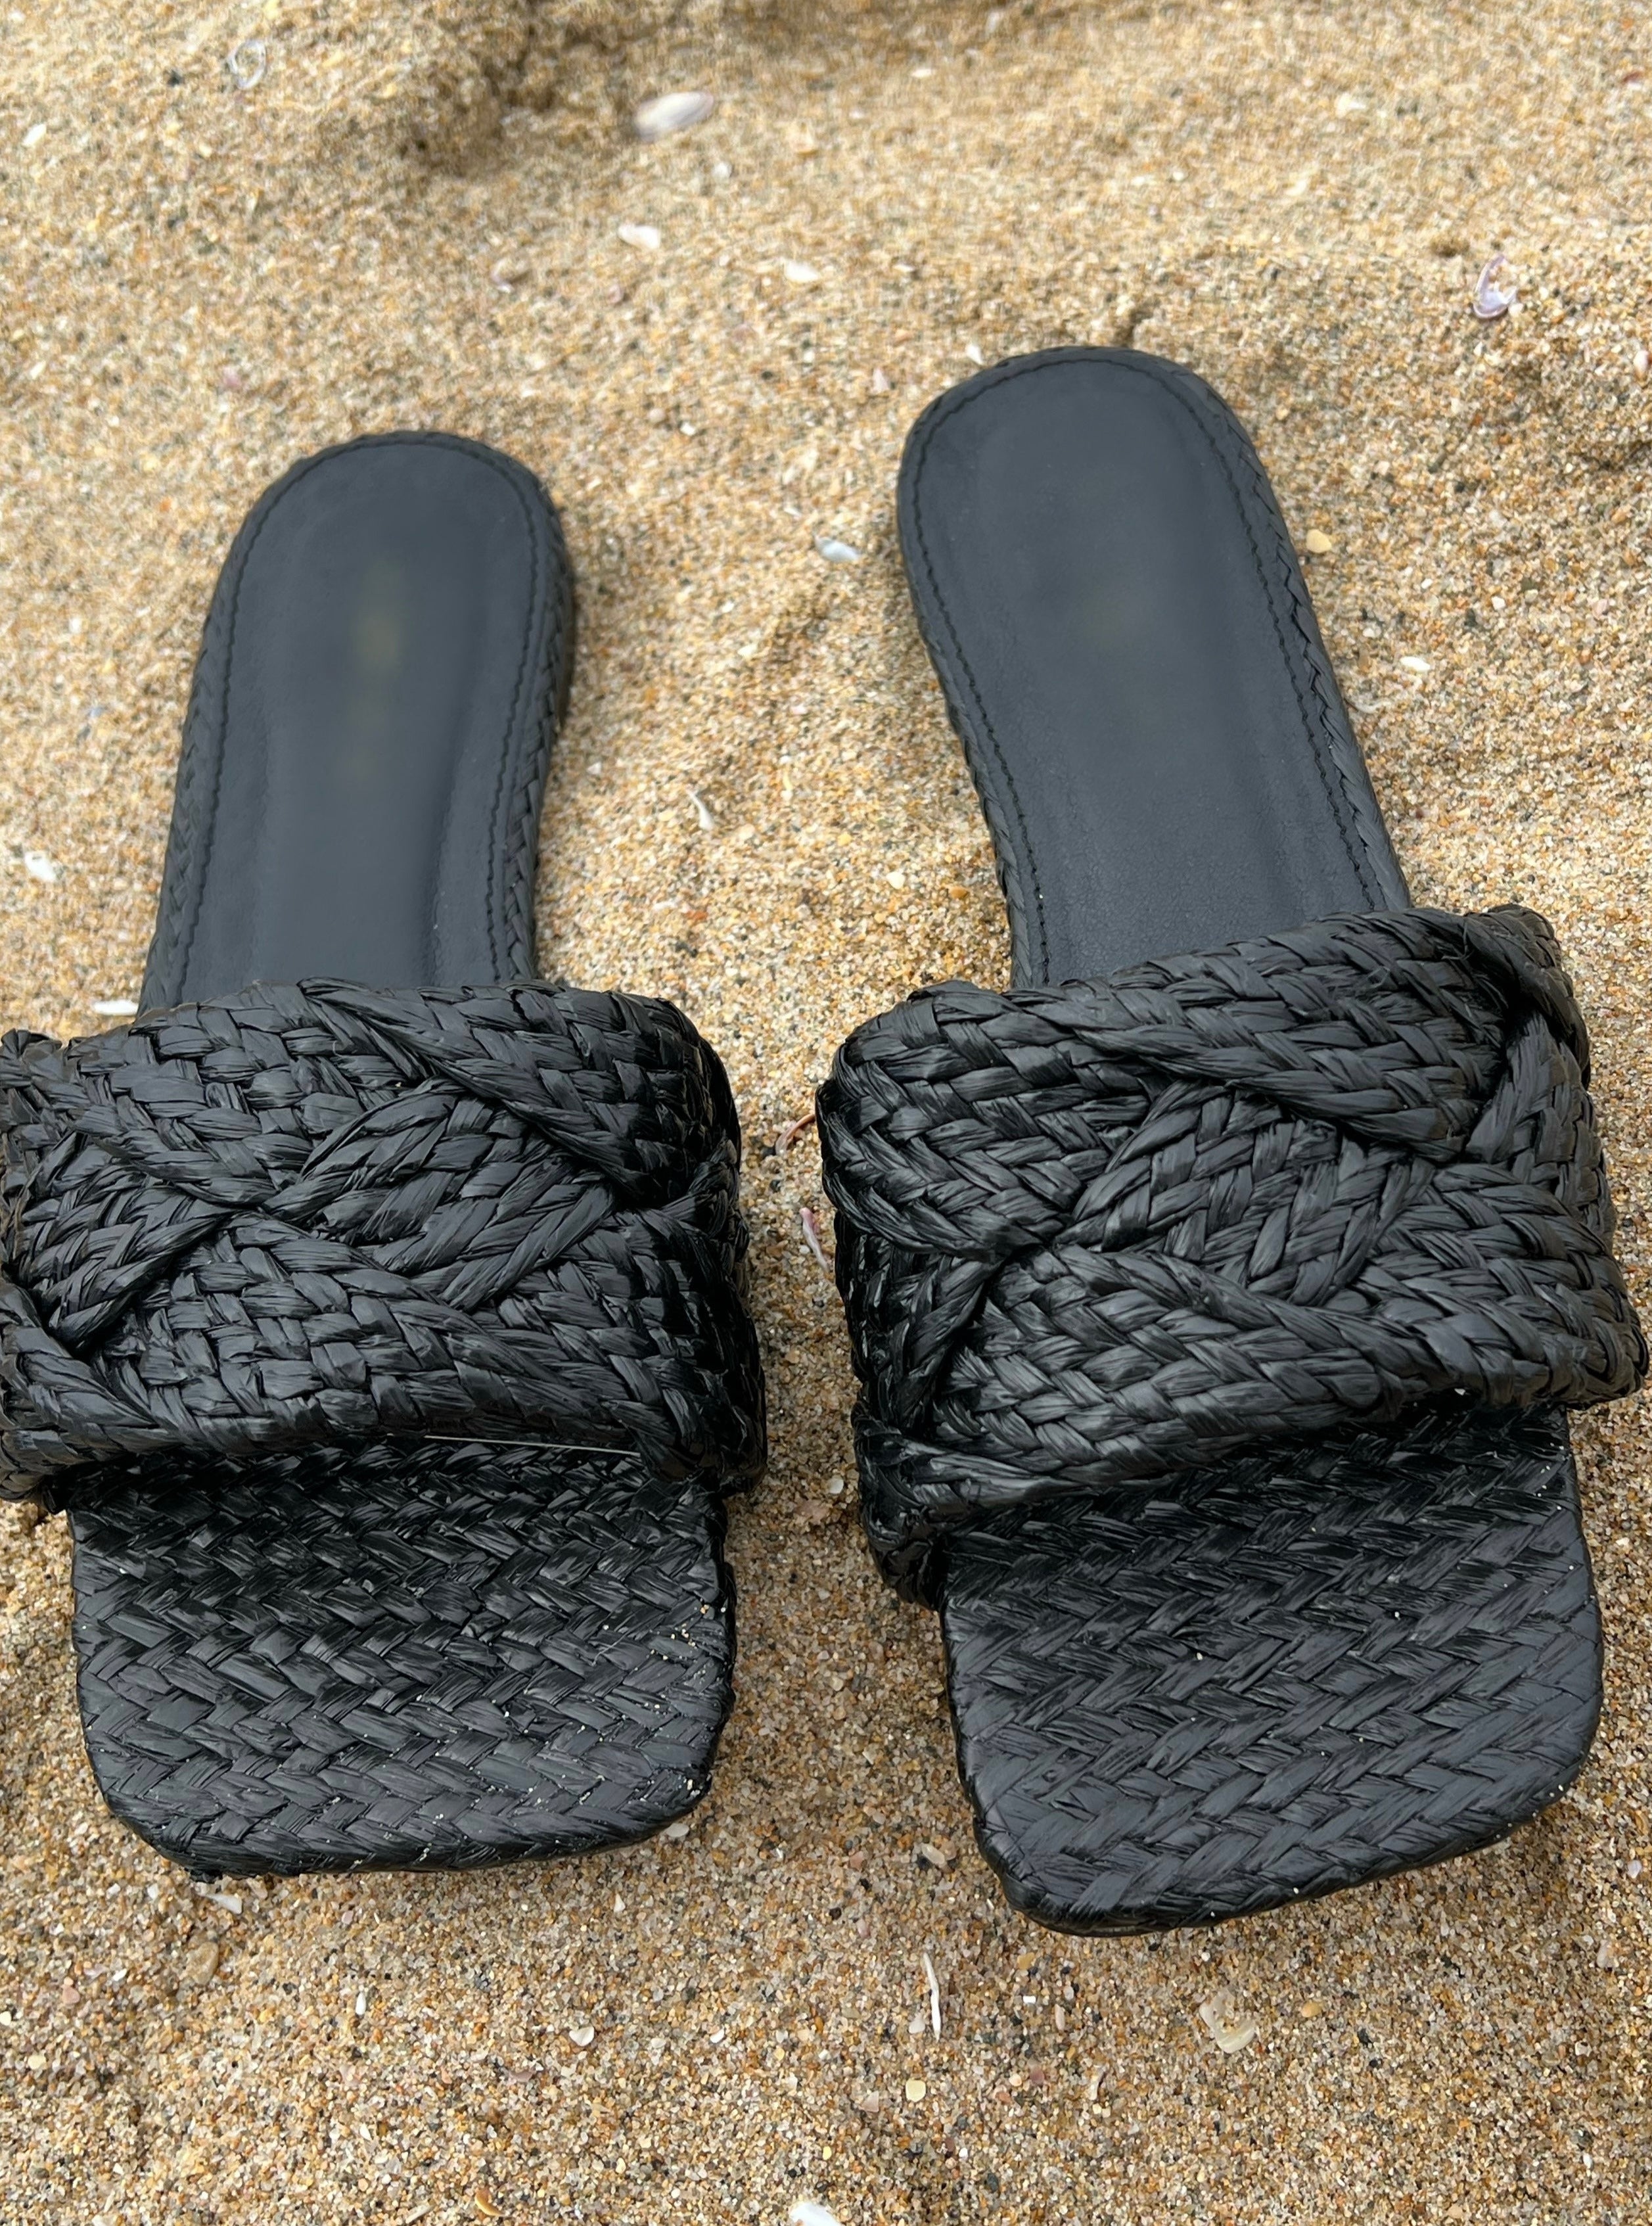 Buy Men Black Casual Sandals Online | Walkway Shoes